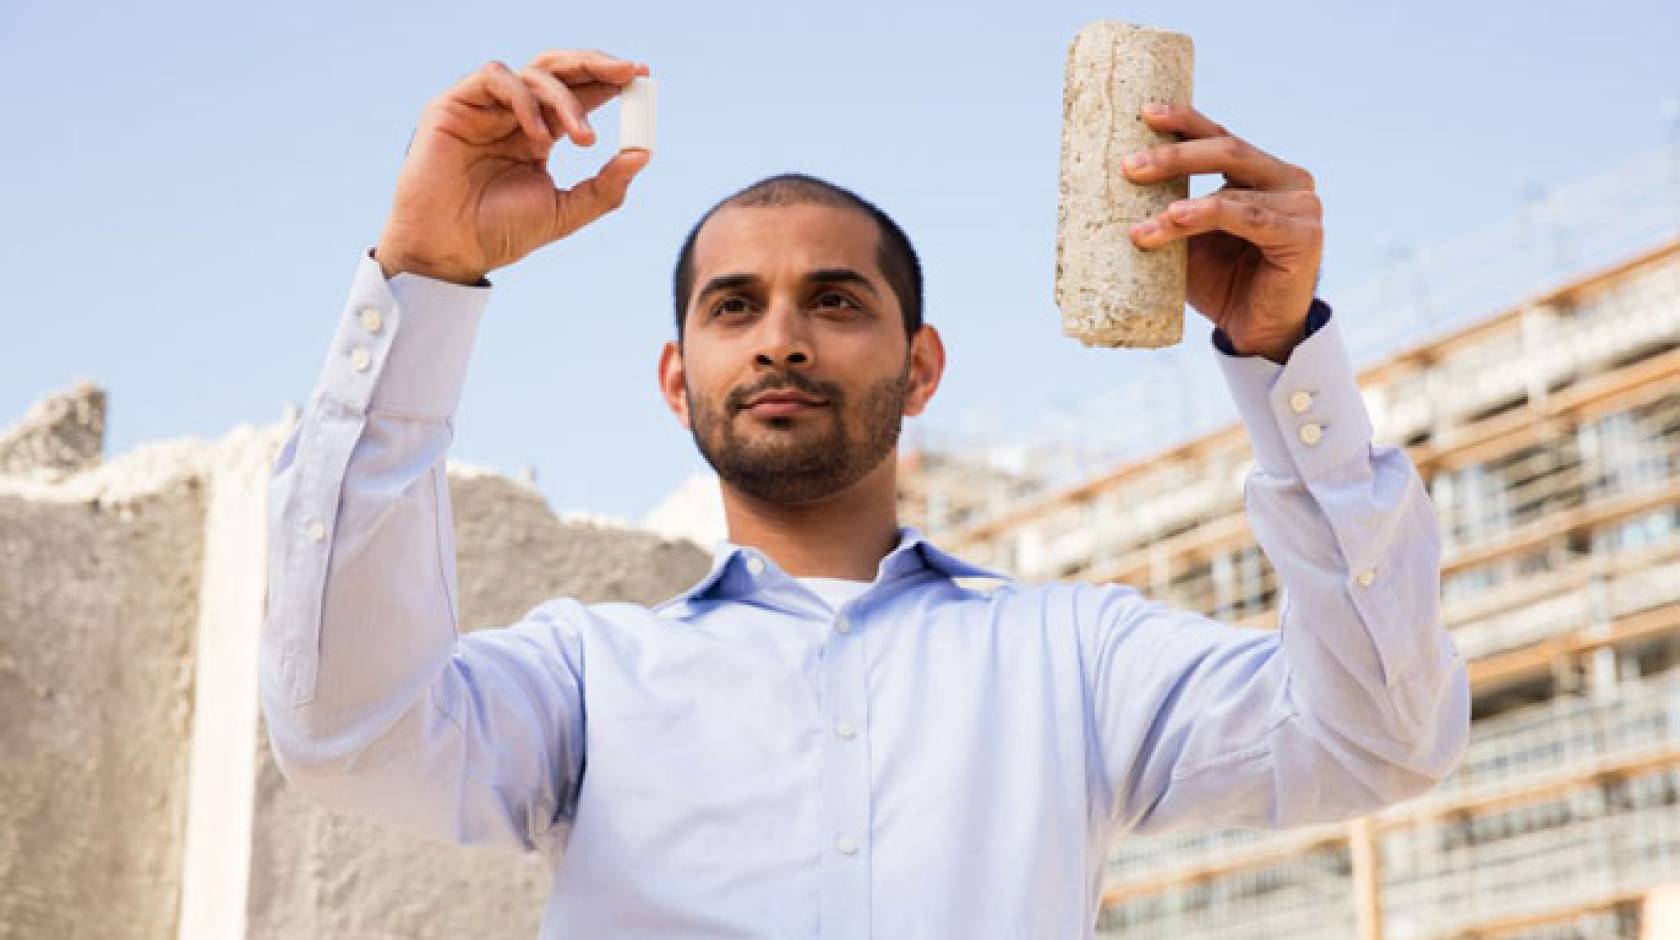 Gaurav Sant holding samples of concrete